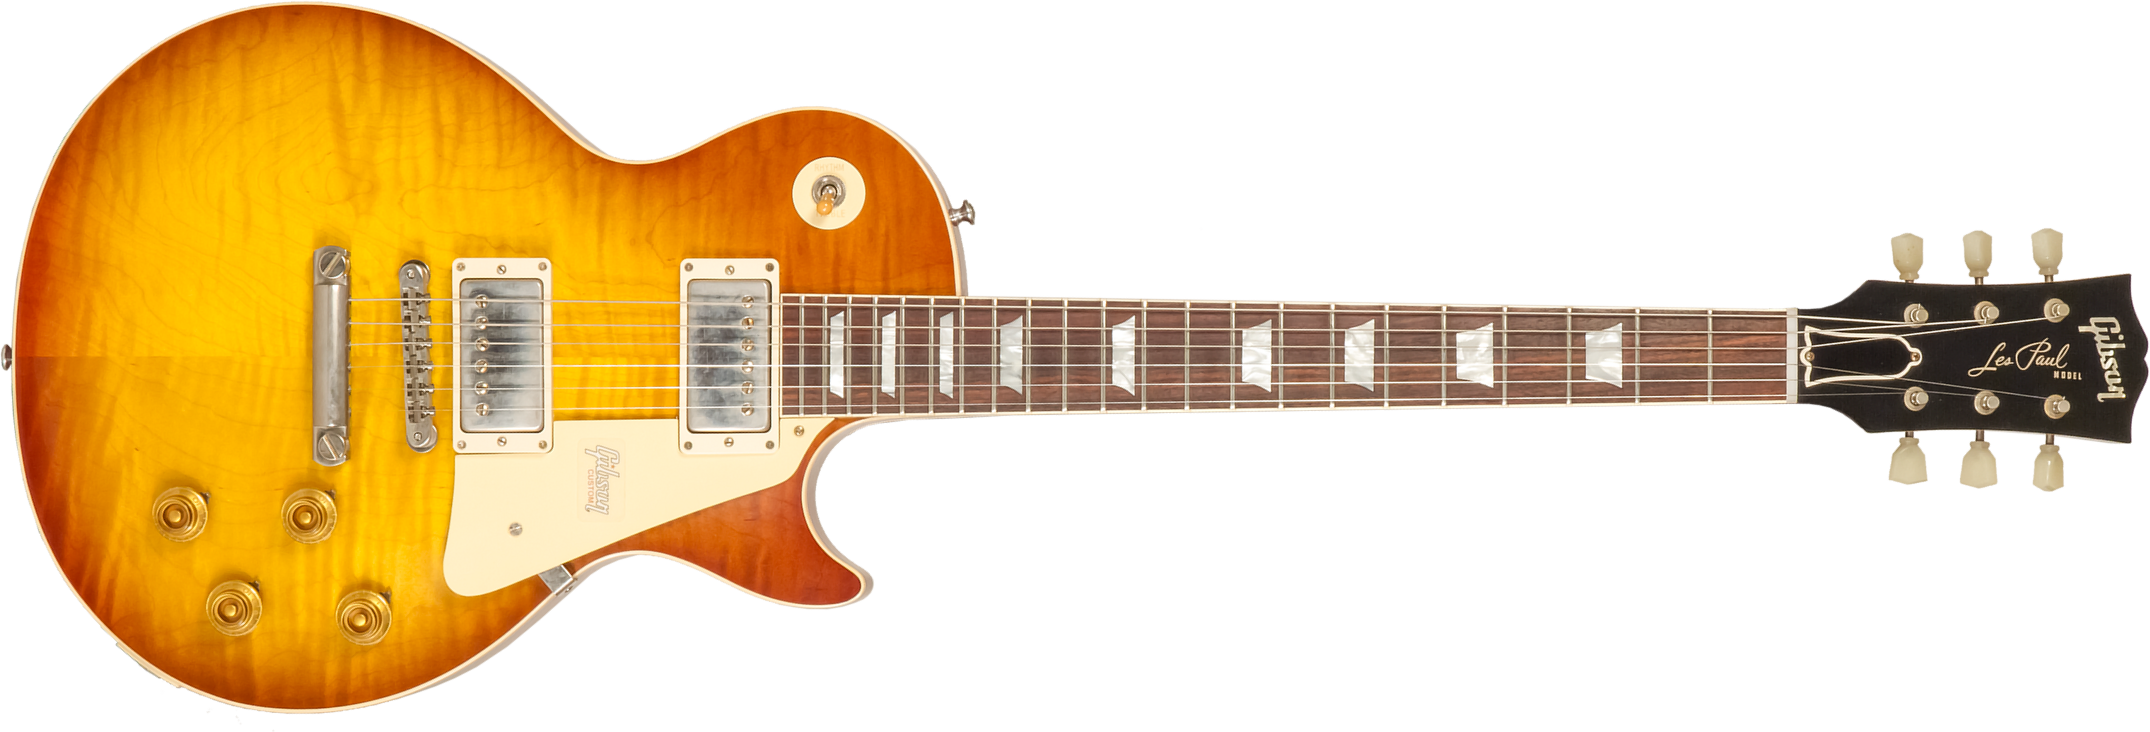 Gibson Custom Shop Les Paul Standard 1959 Reissue 2h Ht Rw #992408 - Vos Royal Teaburst - Guitarra eléctrica de corte único. - Main picture